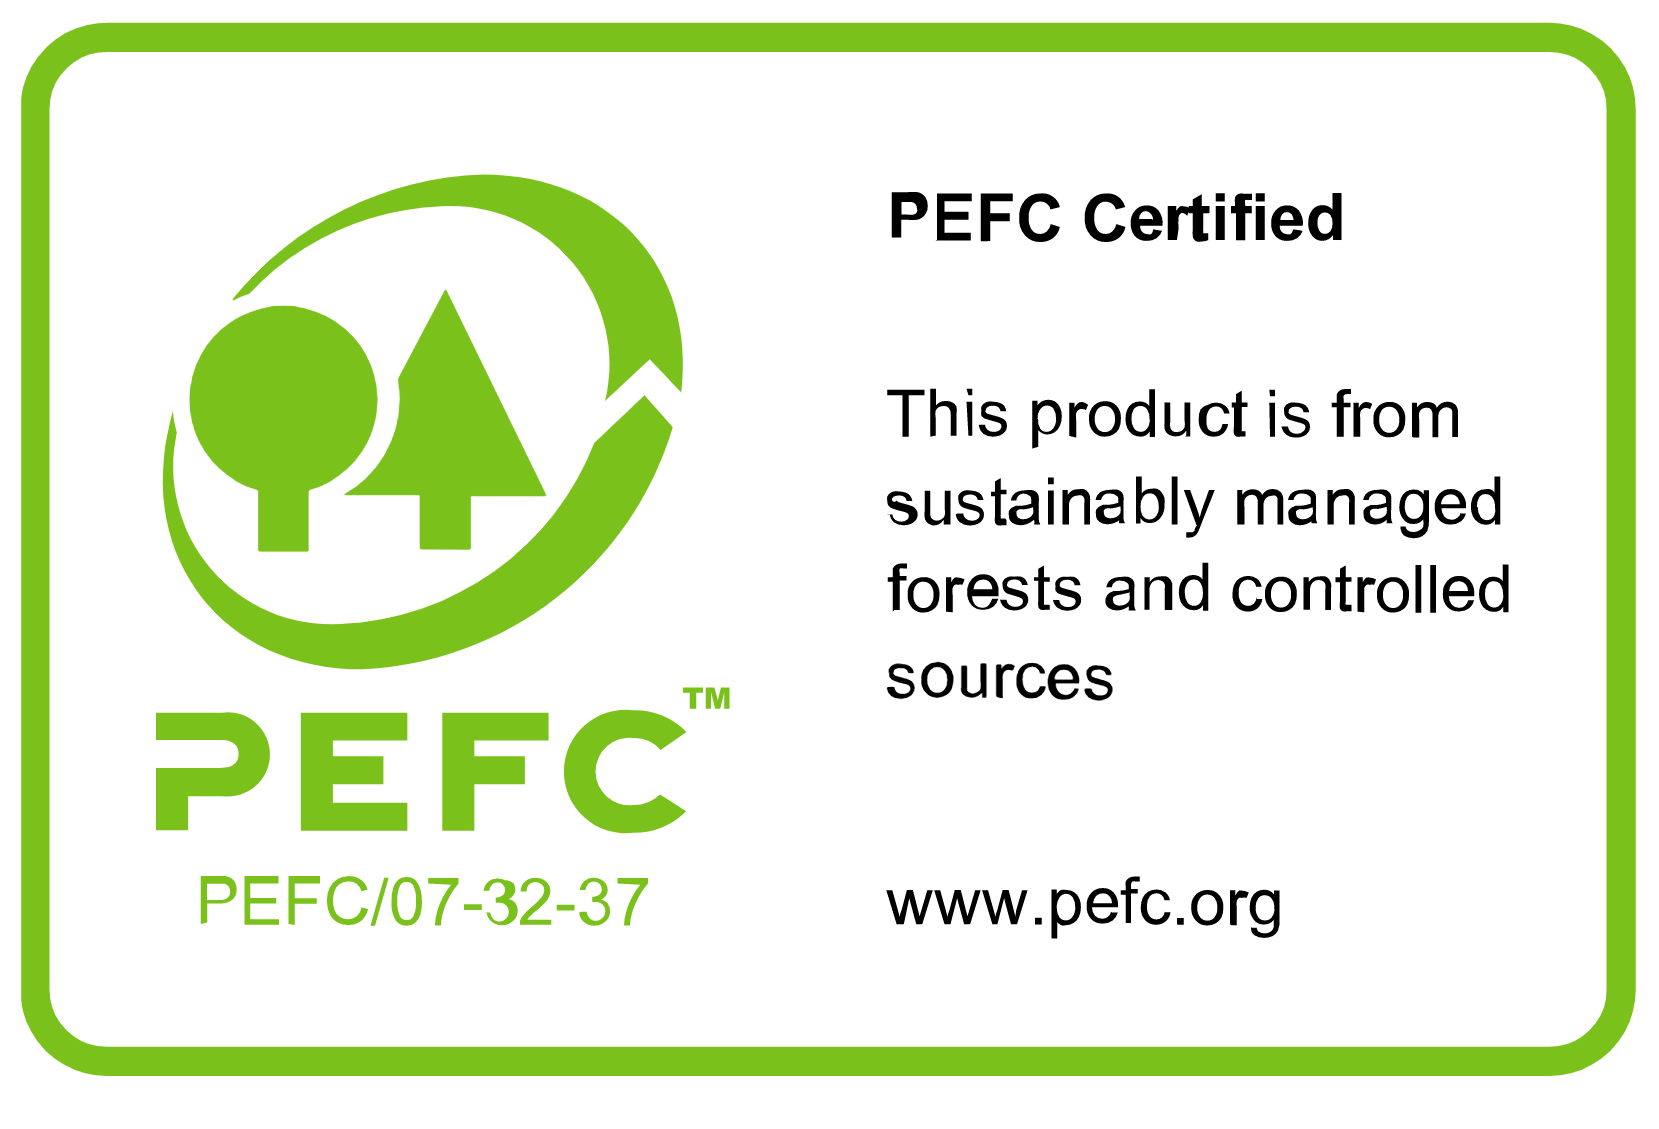 PEFC Procedente de bosques sostenibles